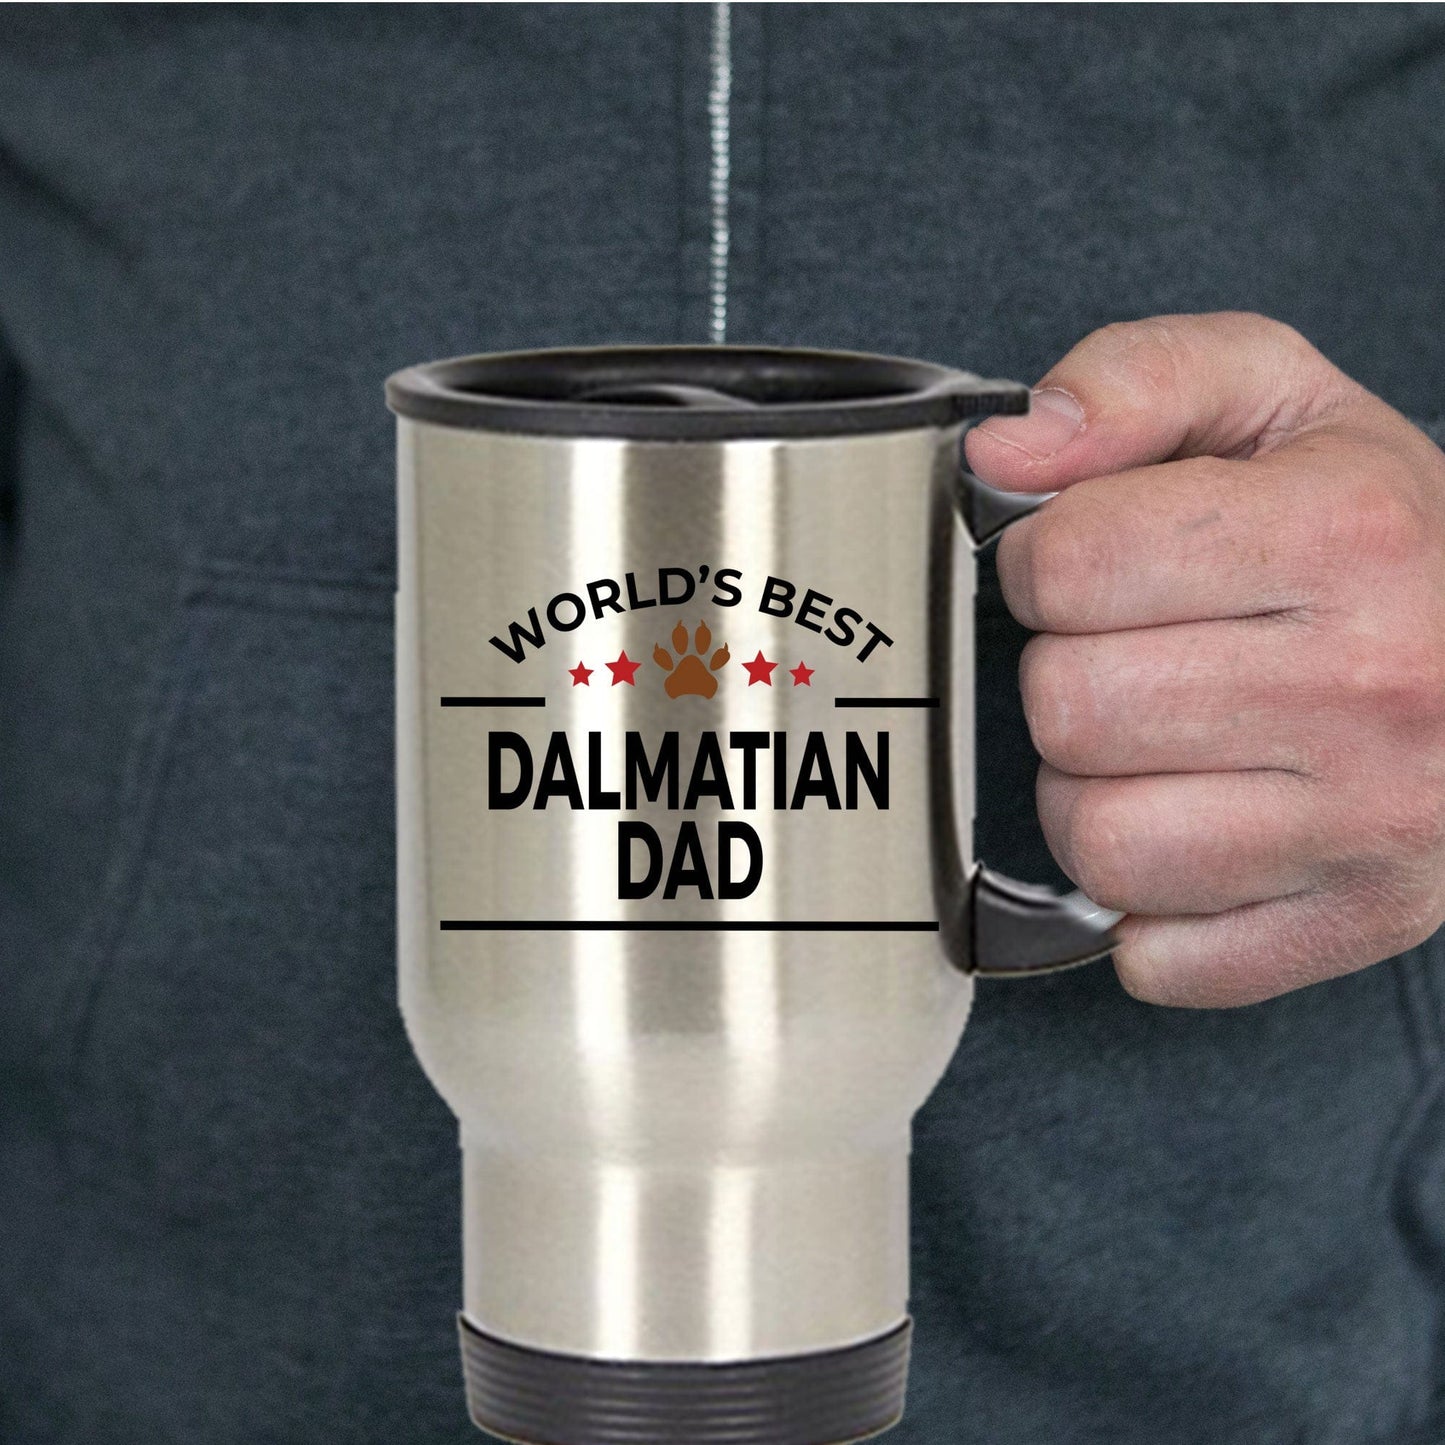 Dalmatian Dog Dad Travel Coffee Mug